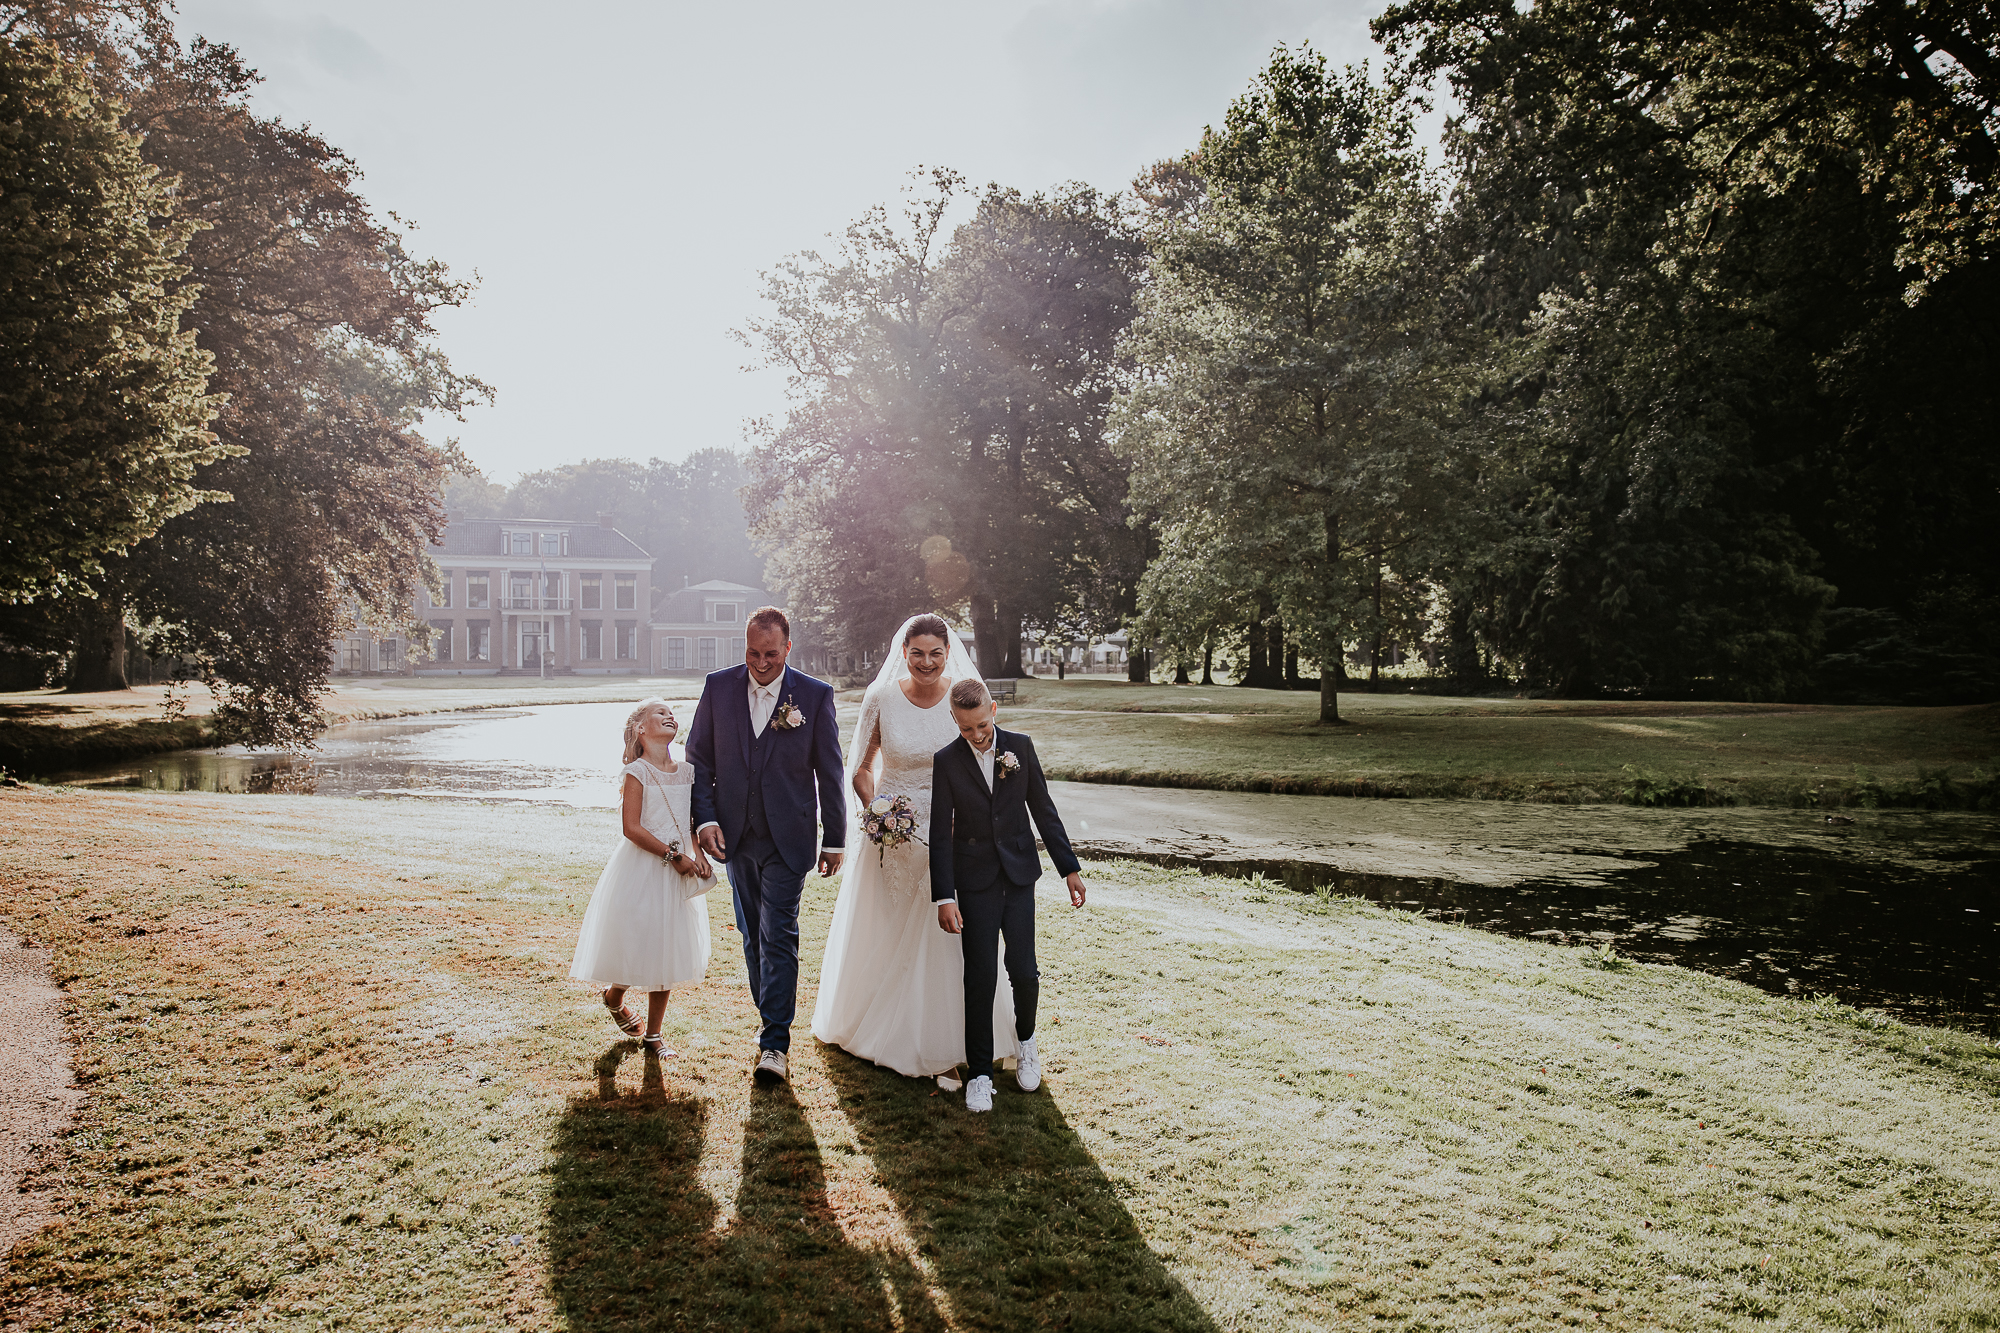 Fotosessie bruiloft door bruidsfotograaf Nickie Fotografie uit Dokkum, Friesland.